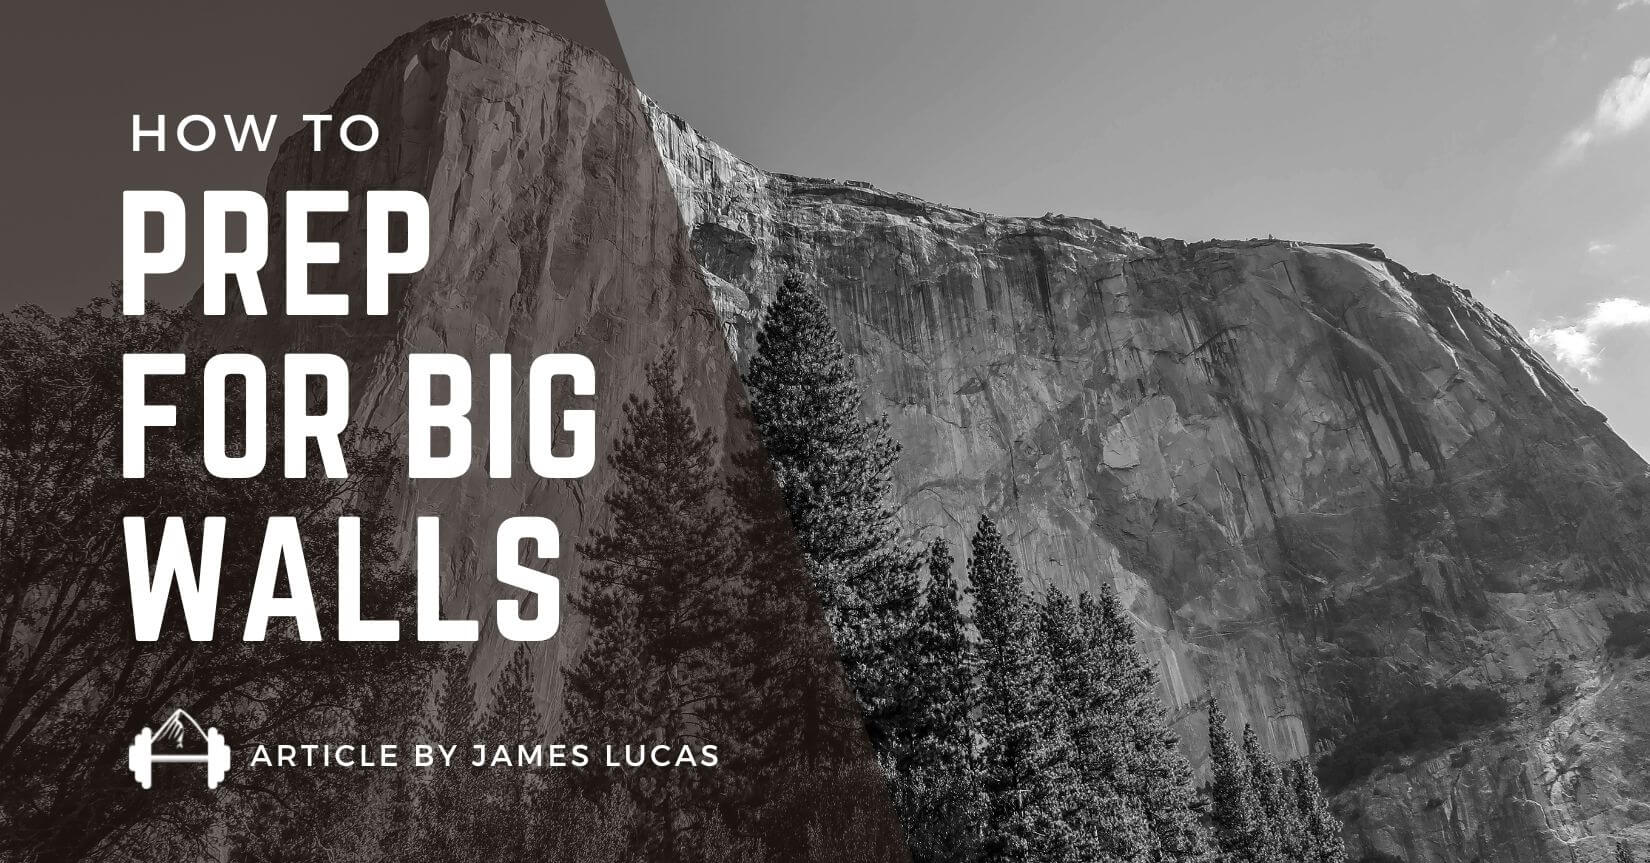 Preparing for Big Wall Free Climbing by James Lucas - TrainingBeta